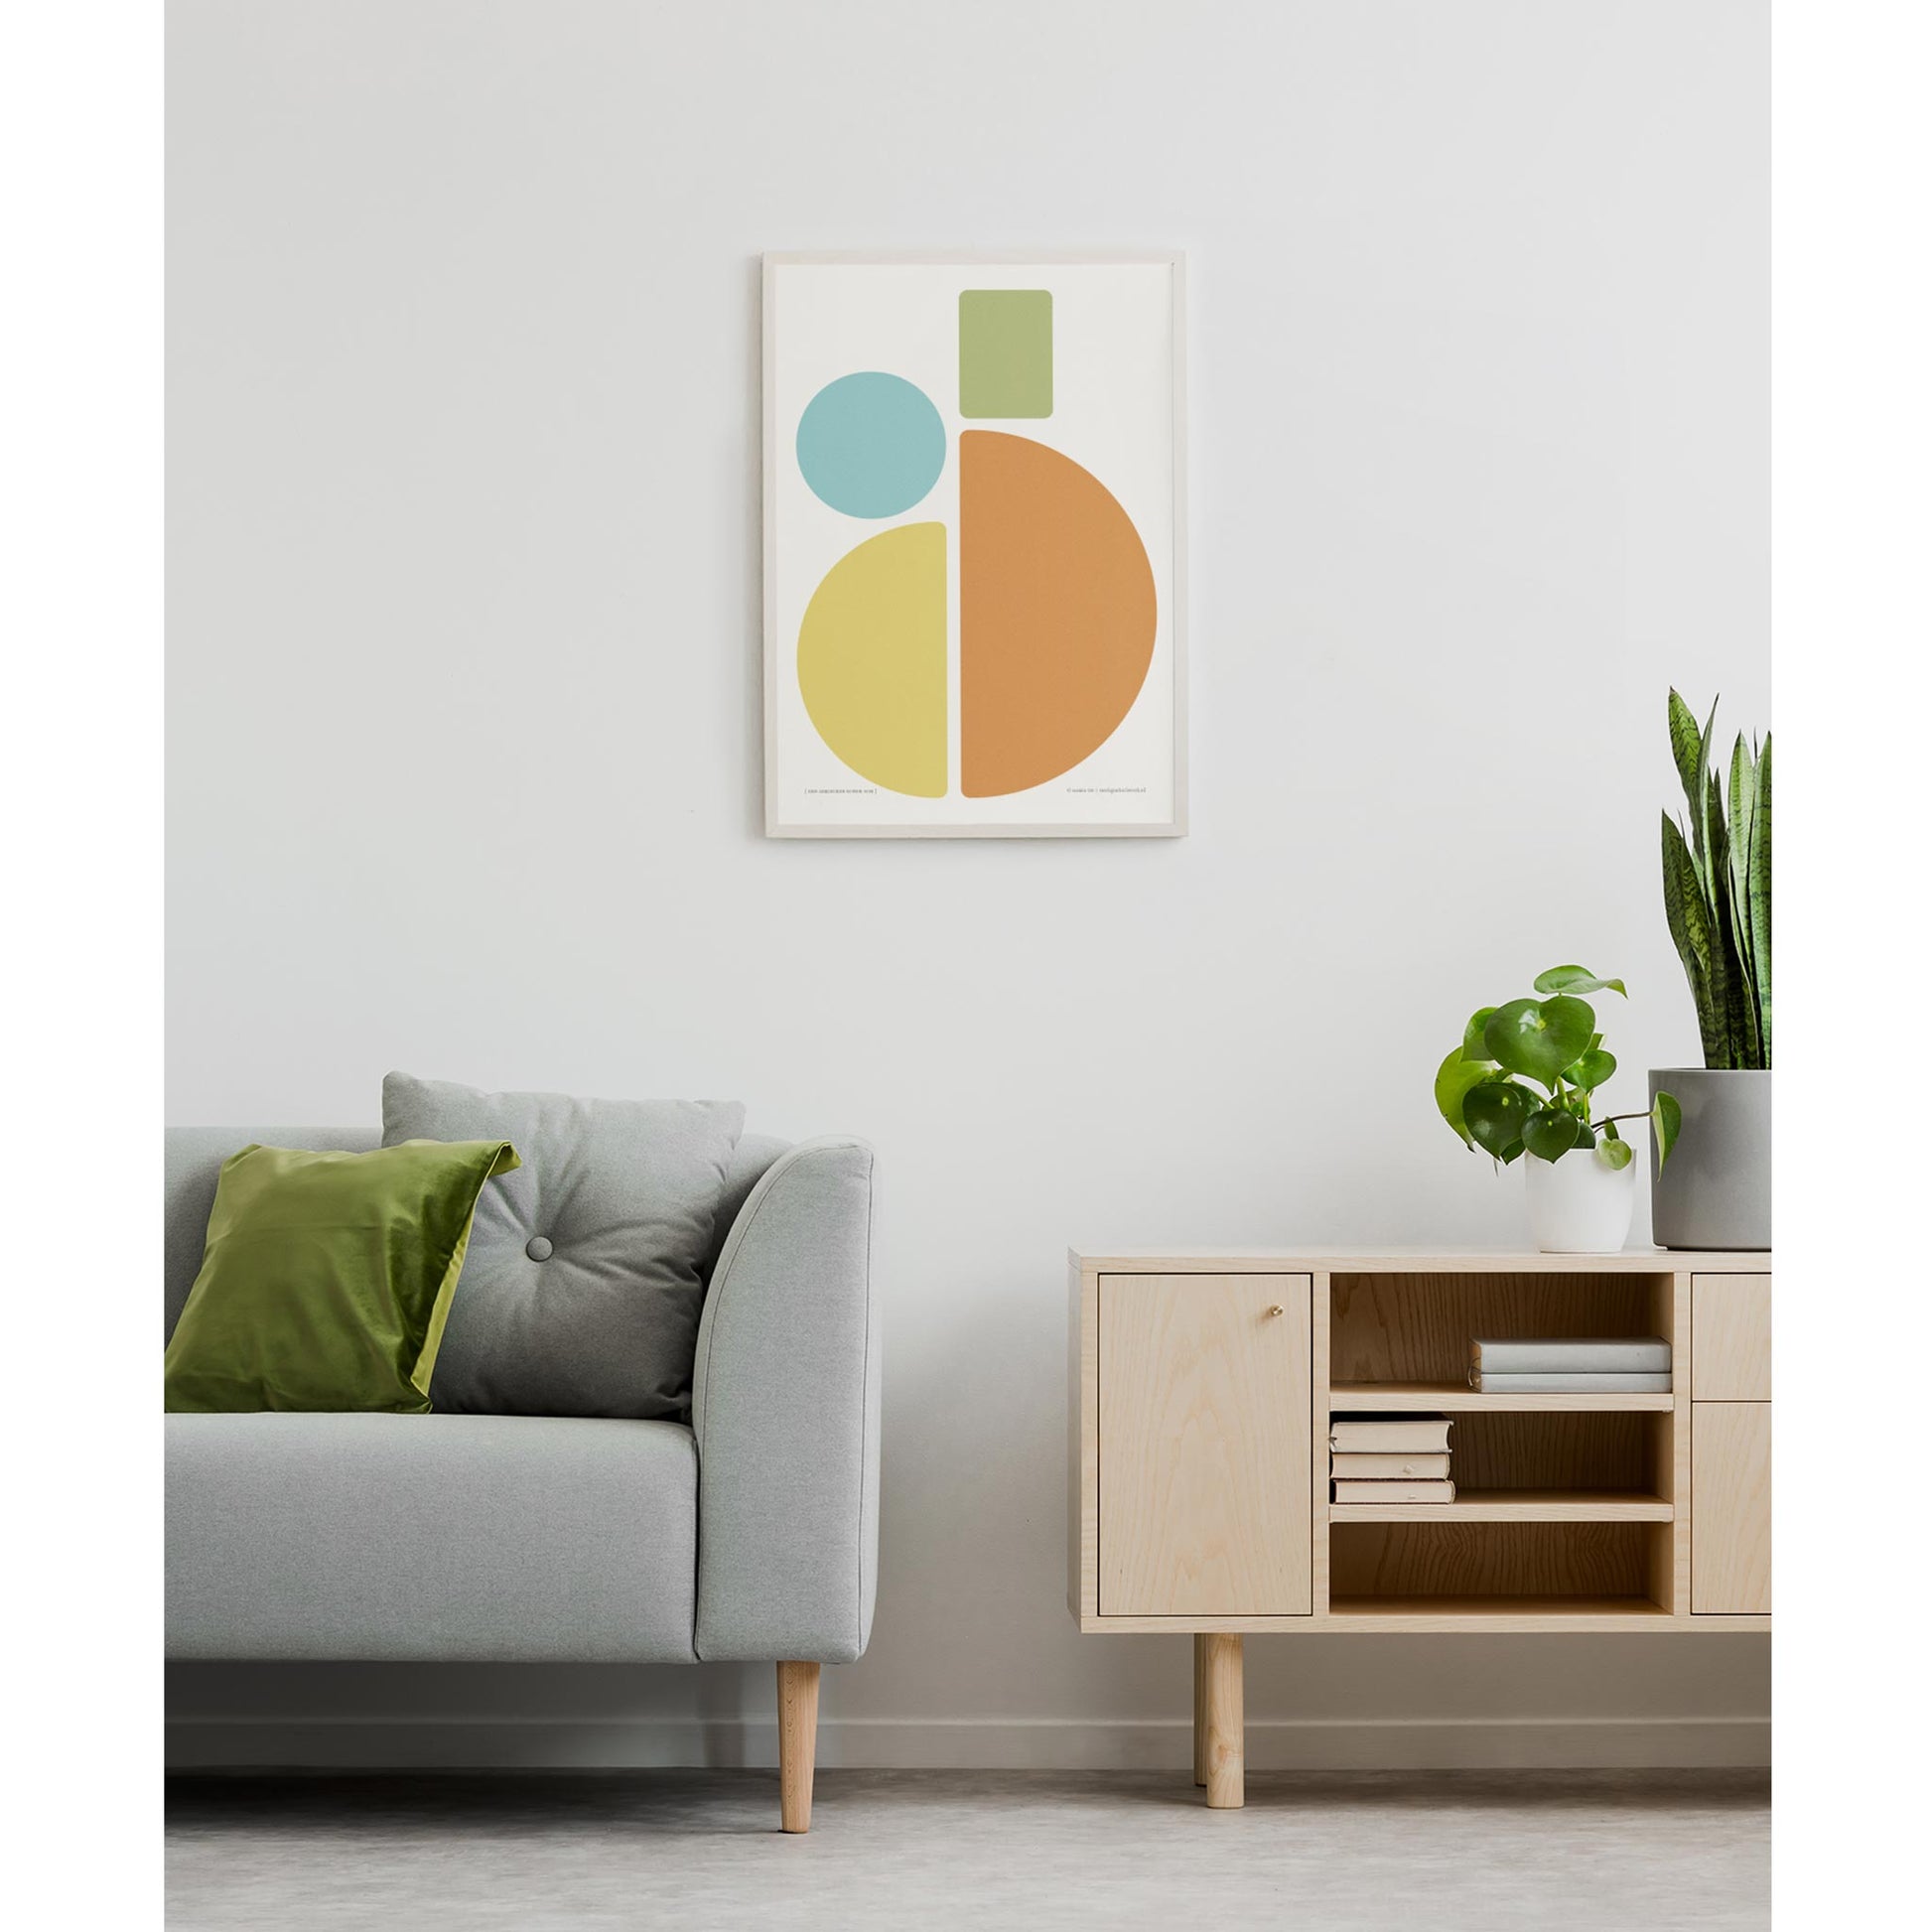 Productafbeelding poster "een gekleurde ronde som" 3de impressie ingelijst hangend aan een witte wand in een interieur